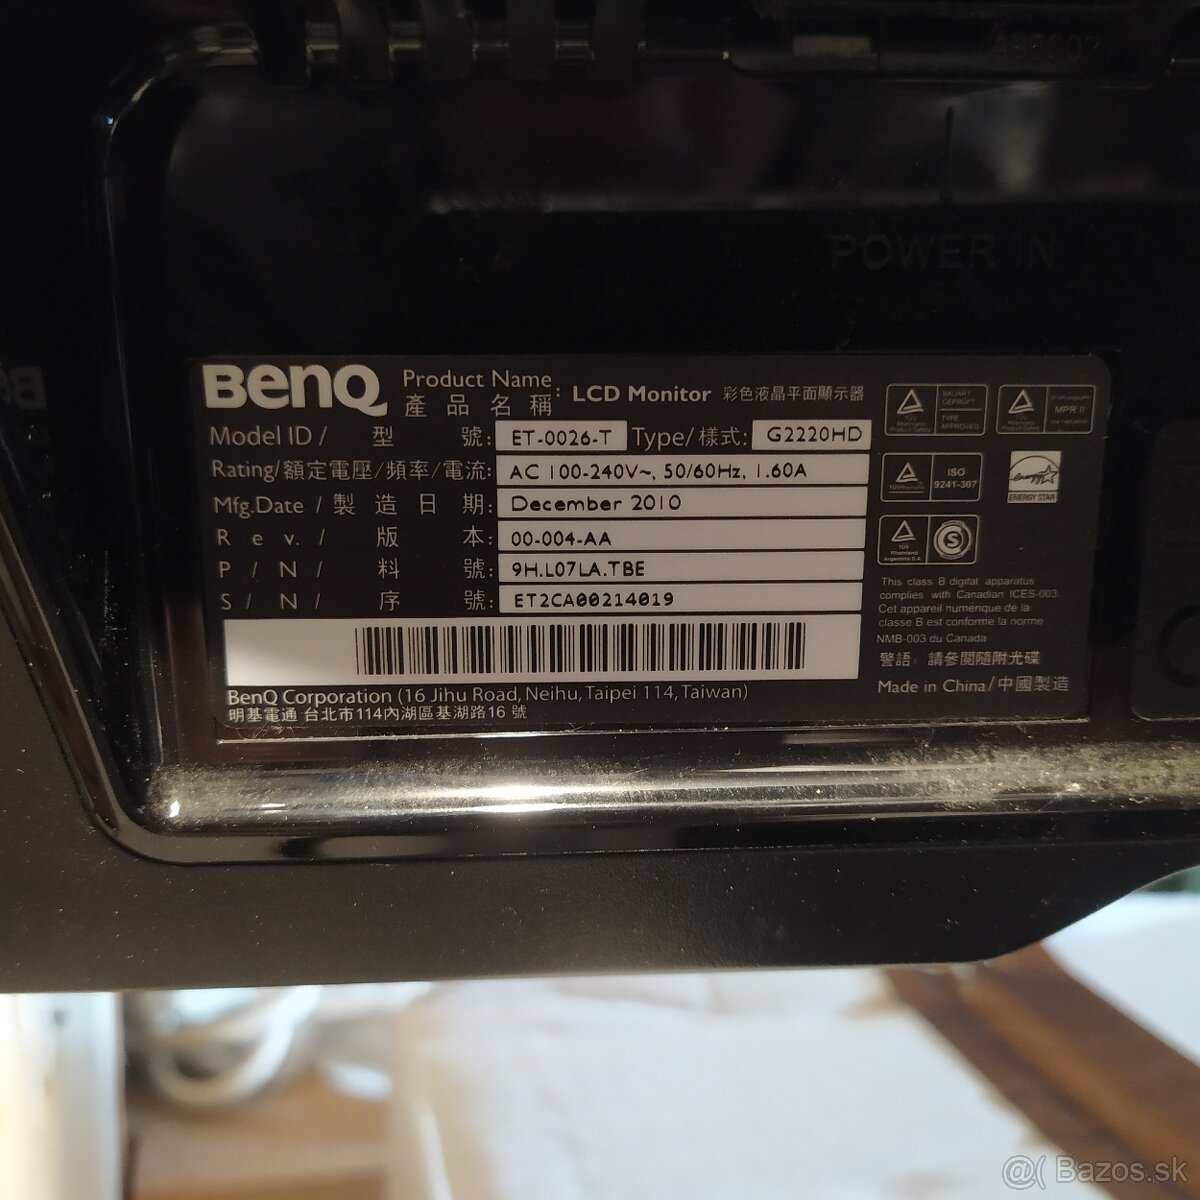 LCD Monitor Benq ET-0026-T